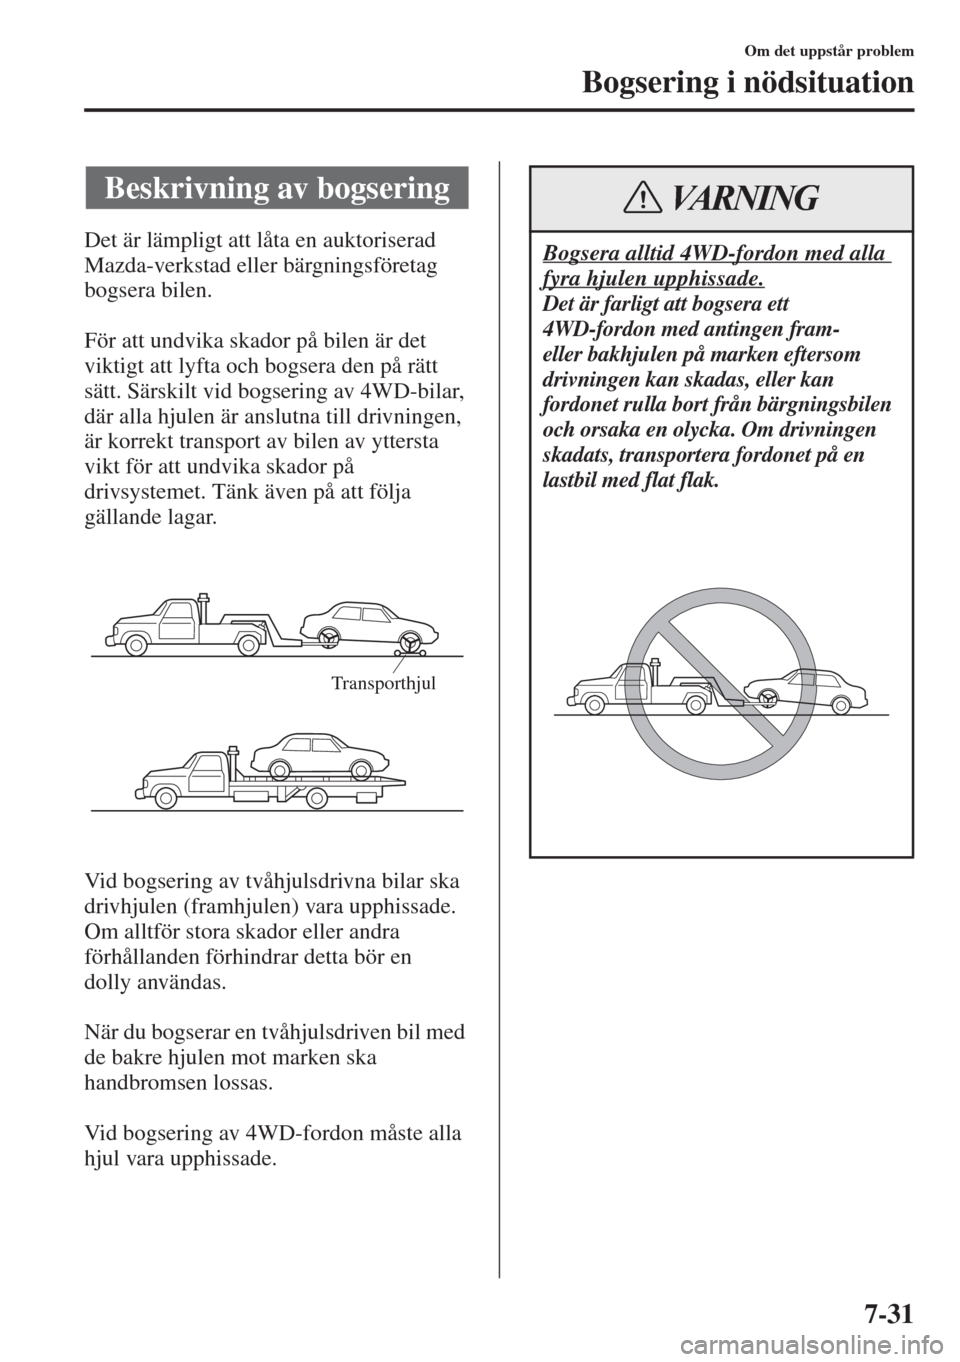 MAZDA MODEL 6 2015  Ägarmanual (in Swedish) 7-31
Om det uppstår problem
Bogsering i nödsituation
Det är lämpligt att låta en auktoriserad 
Mazda-verkstad eller bärgningsföretag 
bogsera bilen.
För att undvika skador på bilen är det 
v